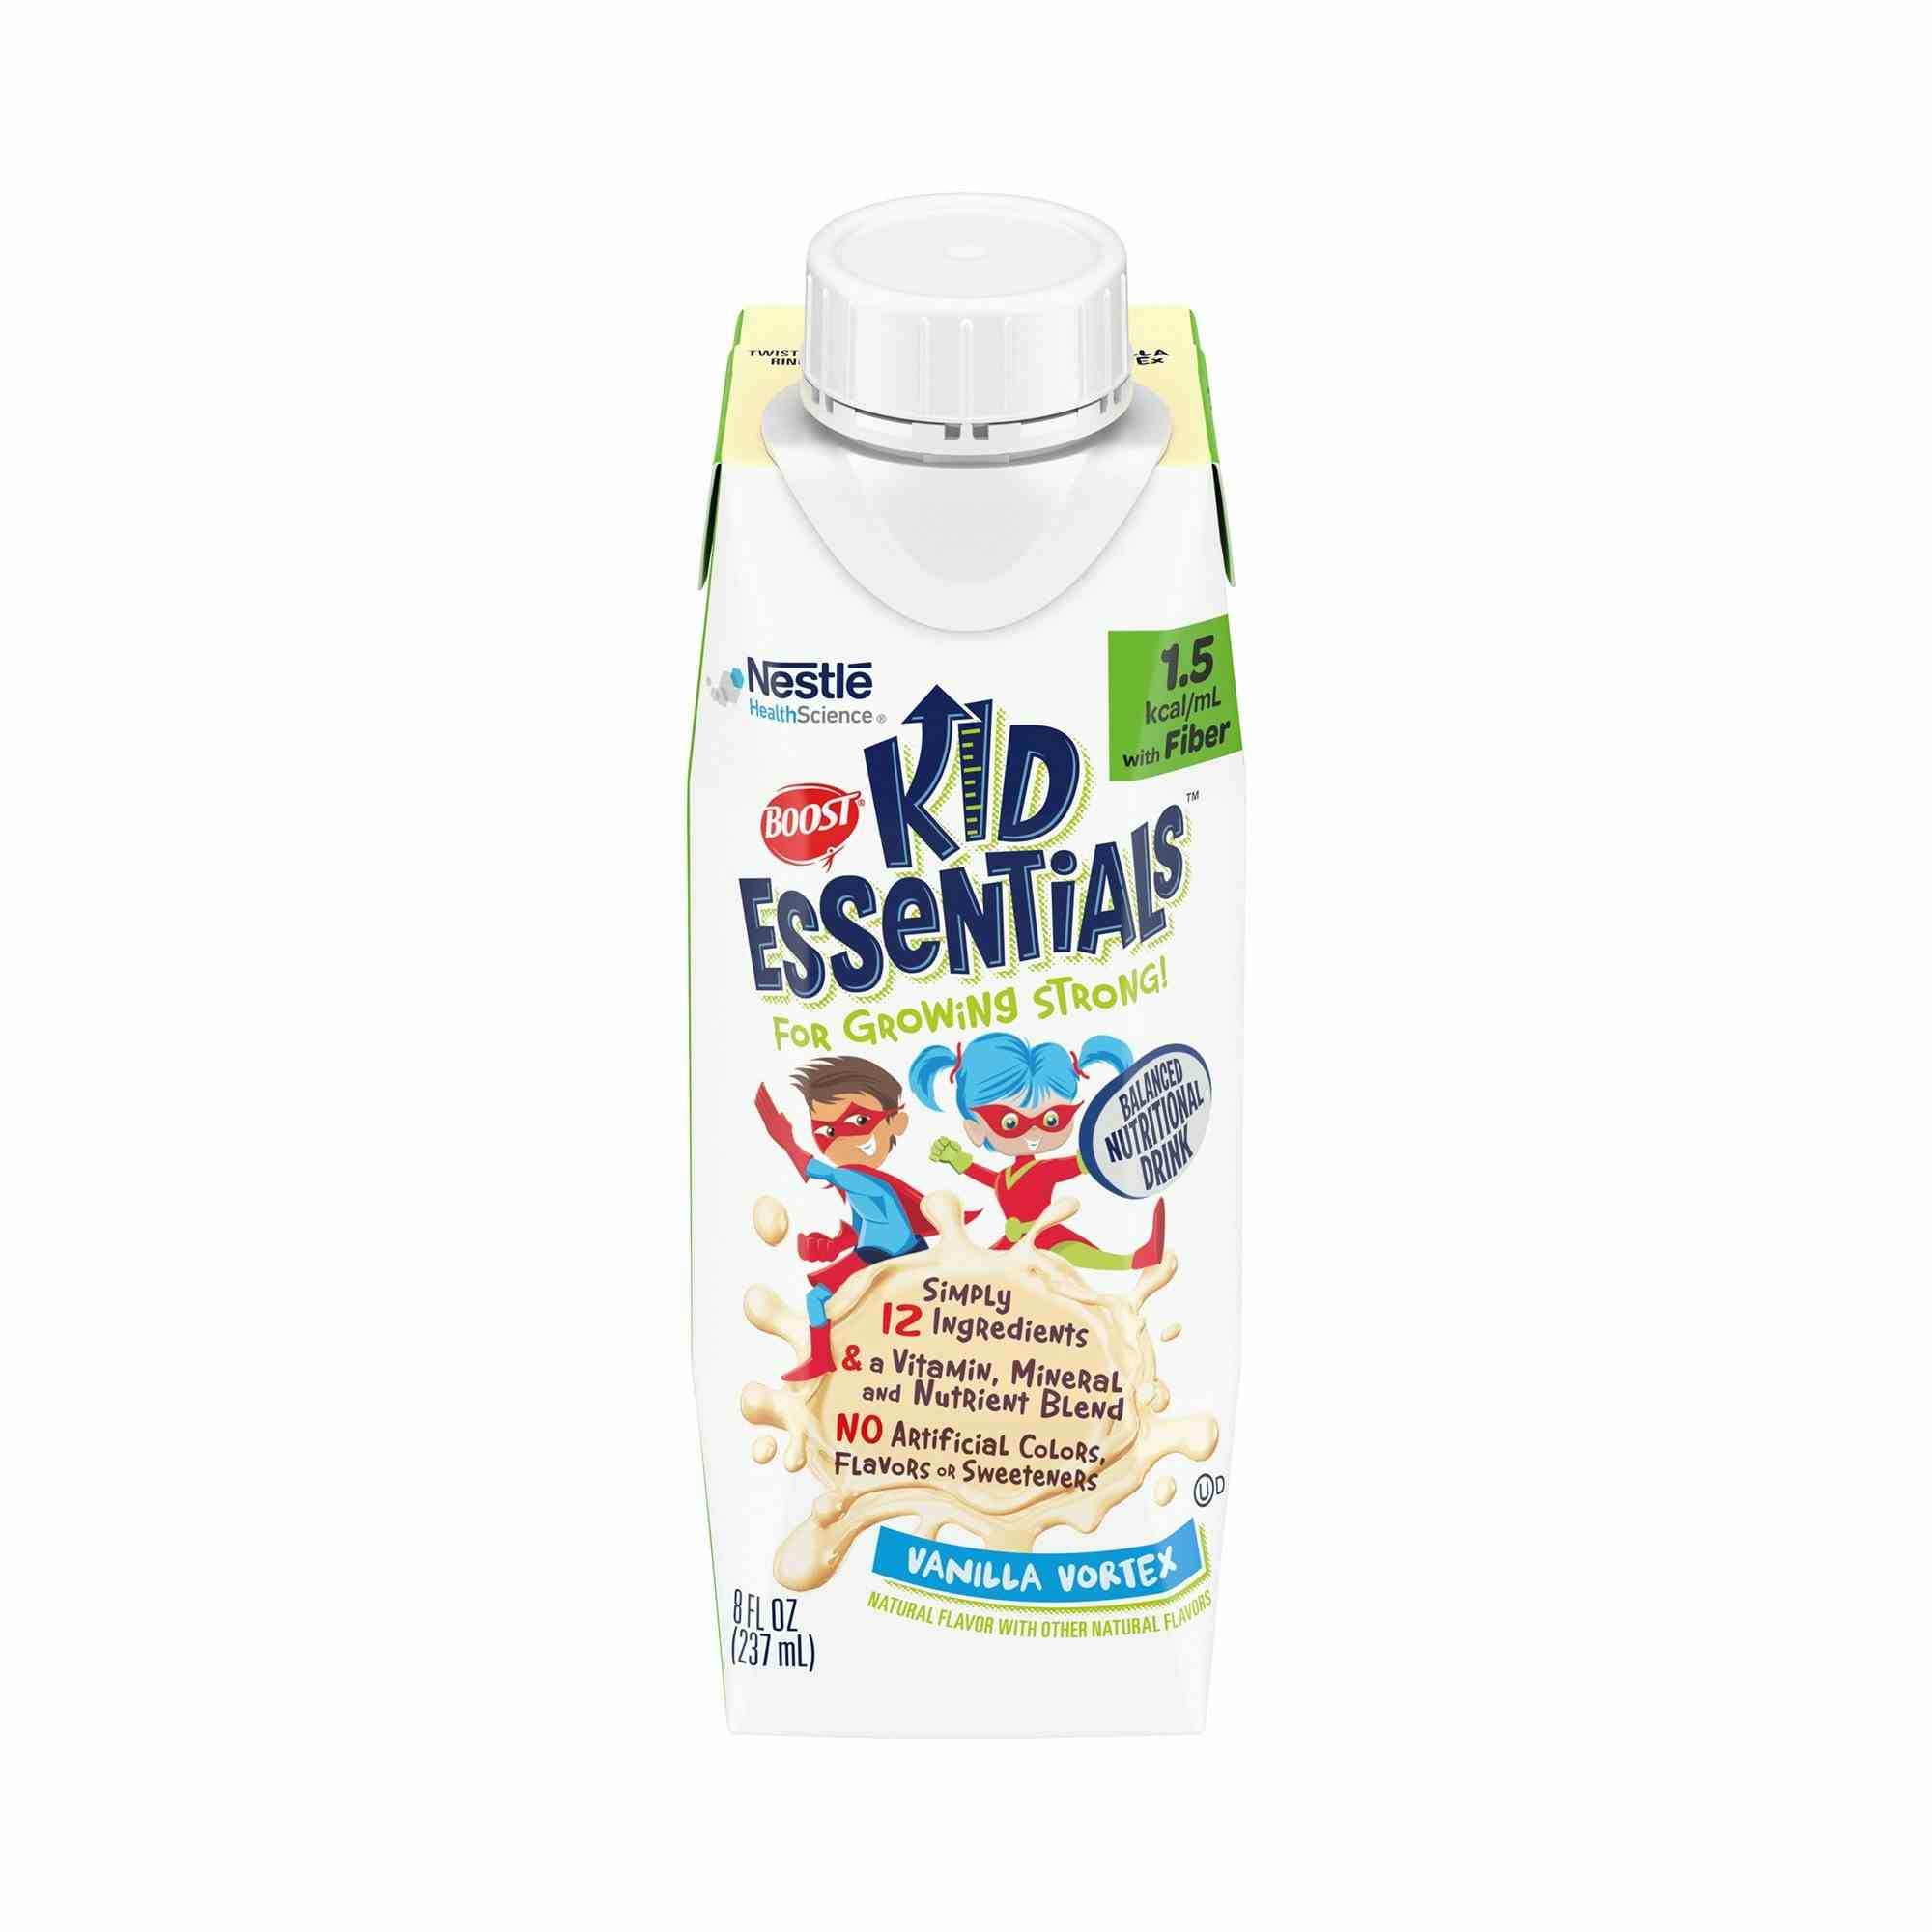 Boost Kid Essentials 1.5 with Fiber Balanced Nutritional Drink, Vanilla Vortex, 8 oz., 00043900663289, Case of 24